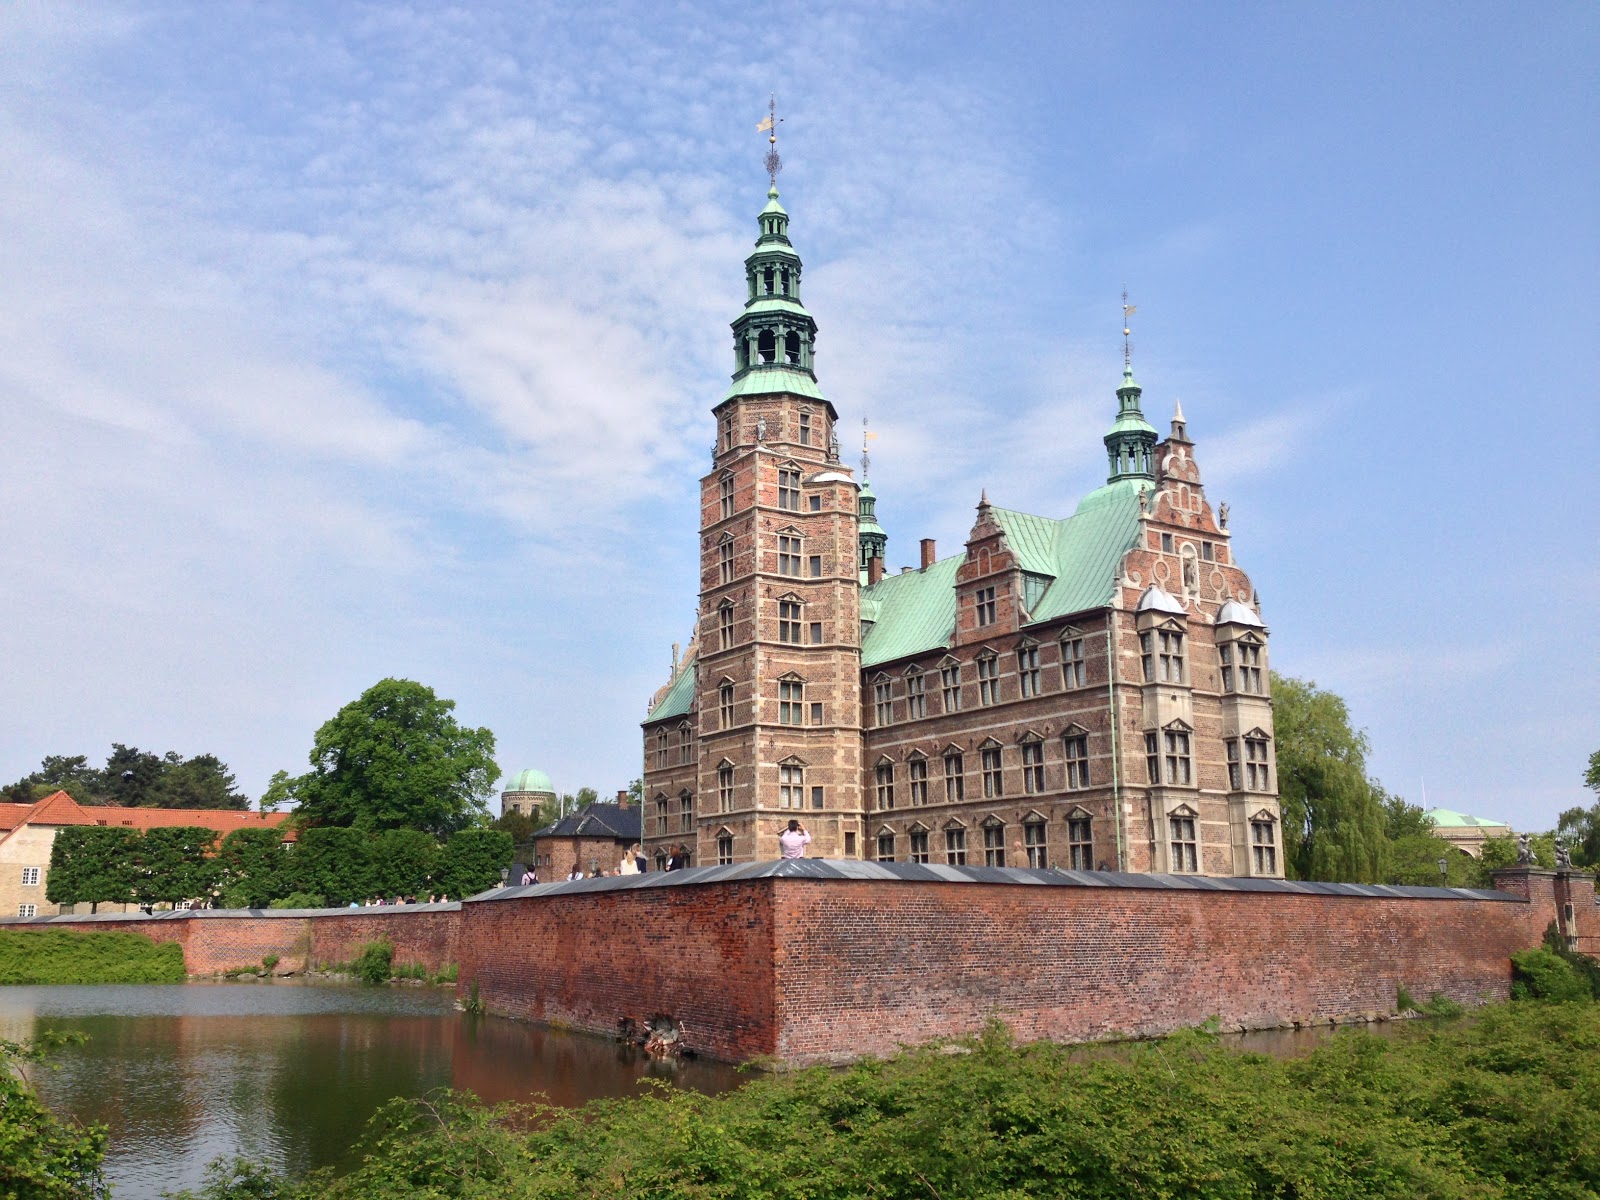 Denmark 2013: Rosenborg Castle